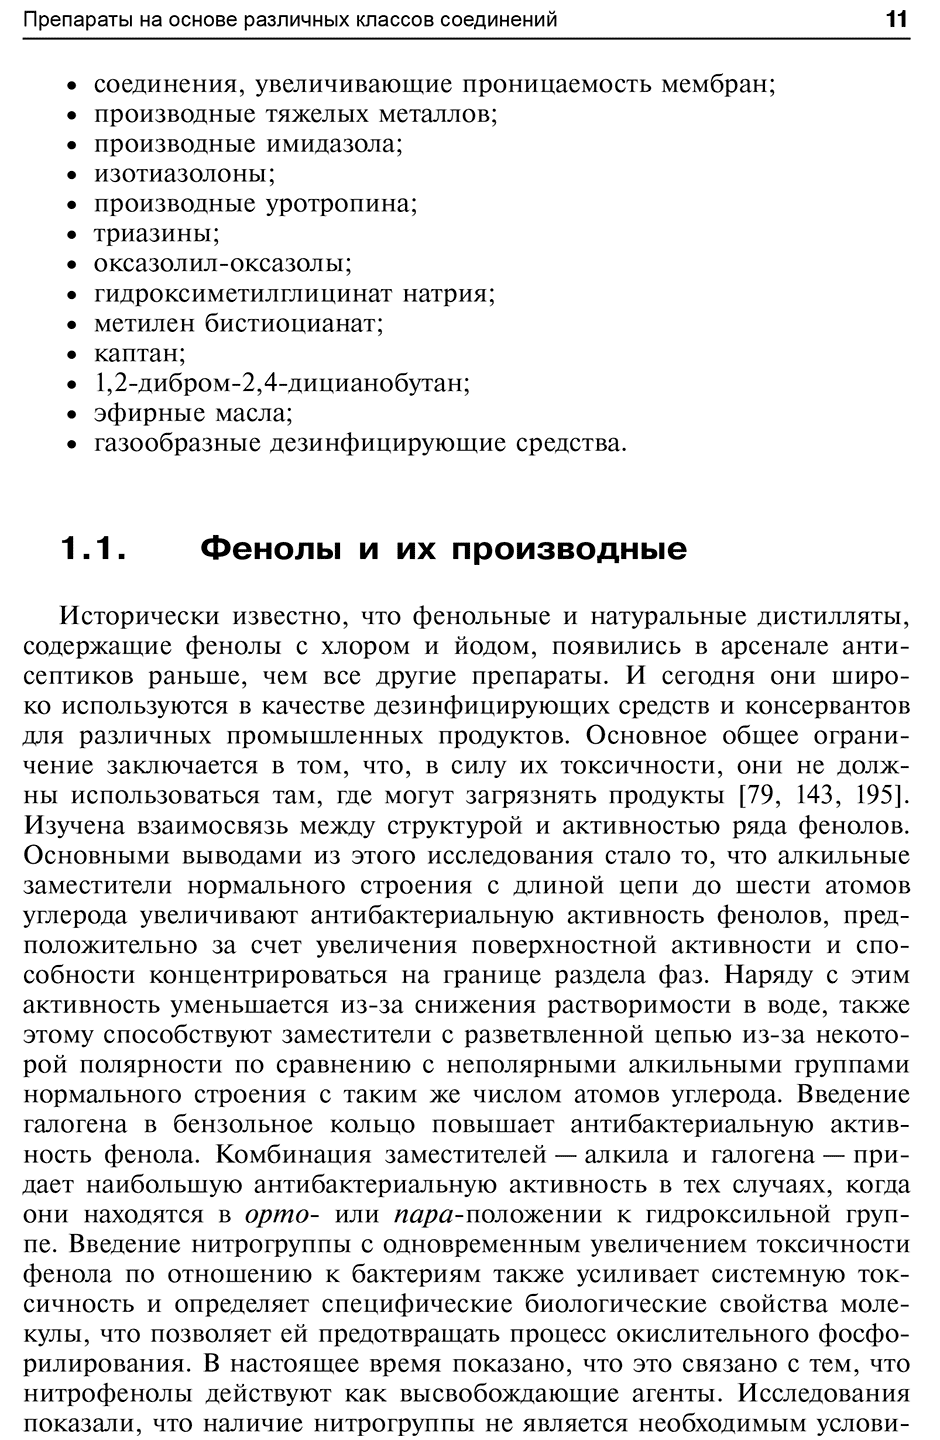 Пример страницы из книги "Активные противомикробные молекулы" - Степаненко И. С.